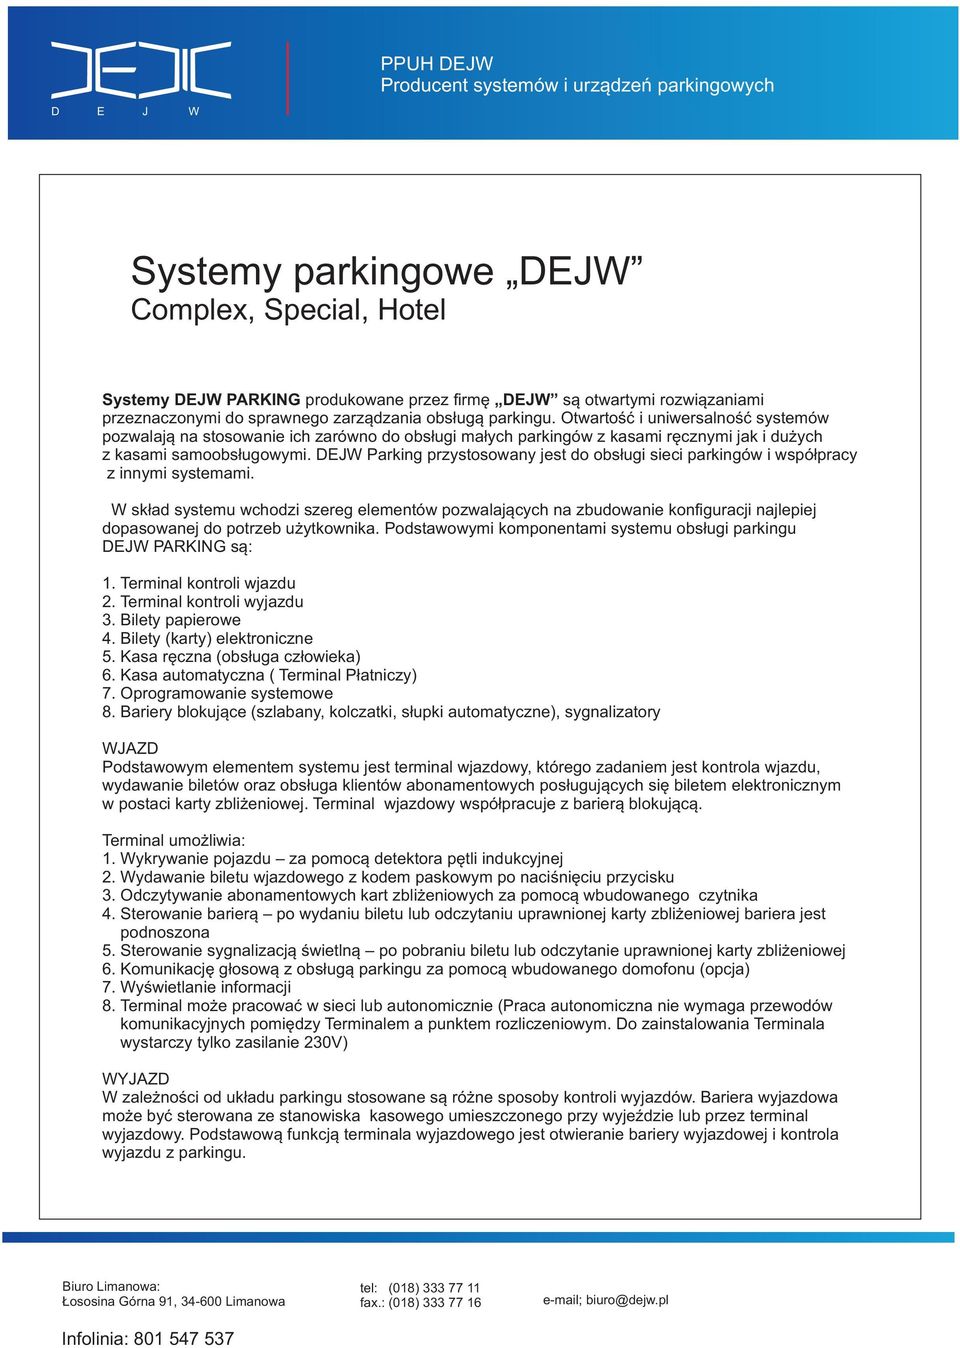 DEJW Parking przystosowany jest do obsługi sieci parkingów i współpracy z innymi systemami.